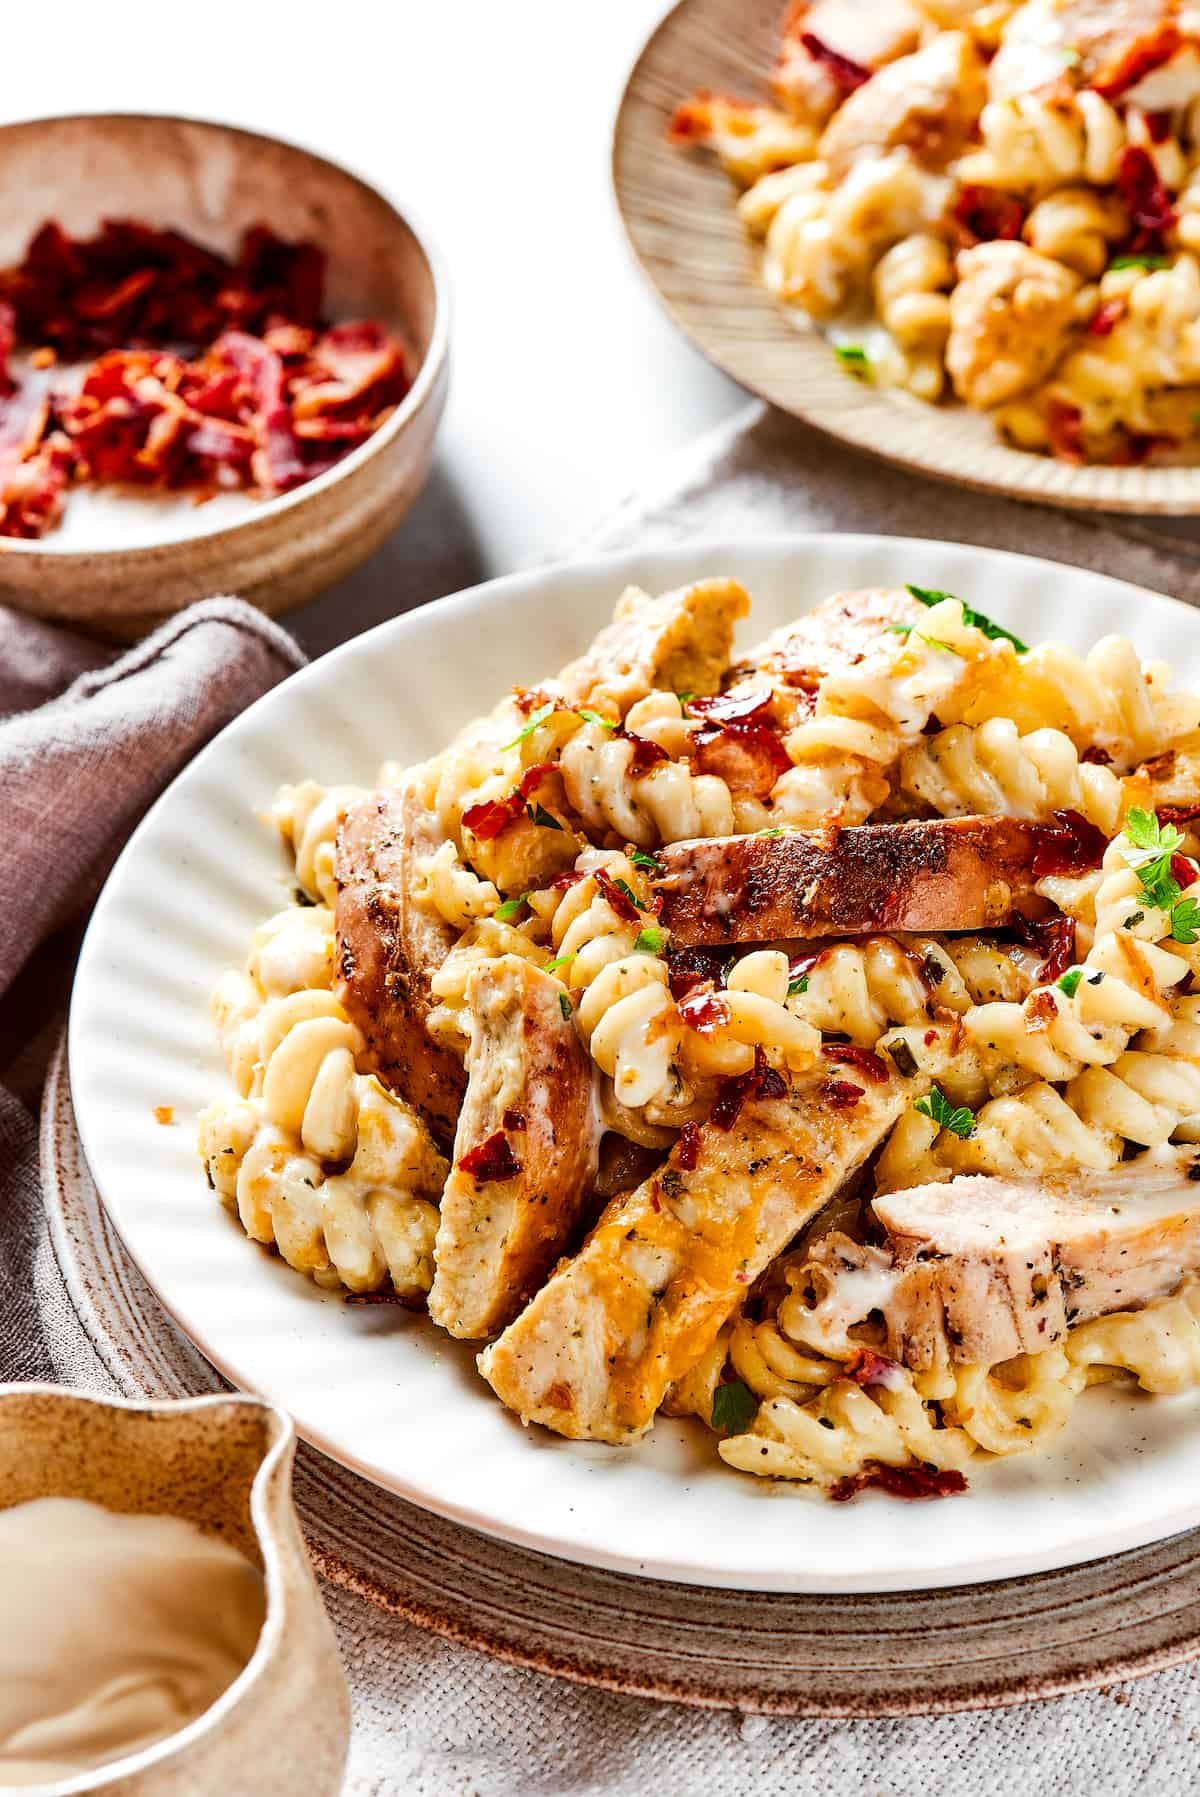 Chicken bacon ranch pasta on dinner plates.